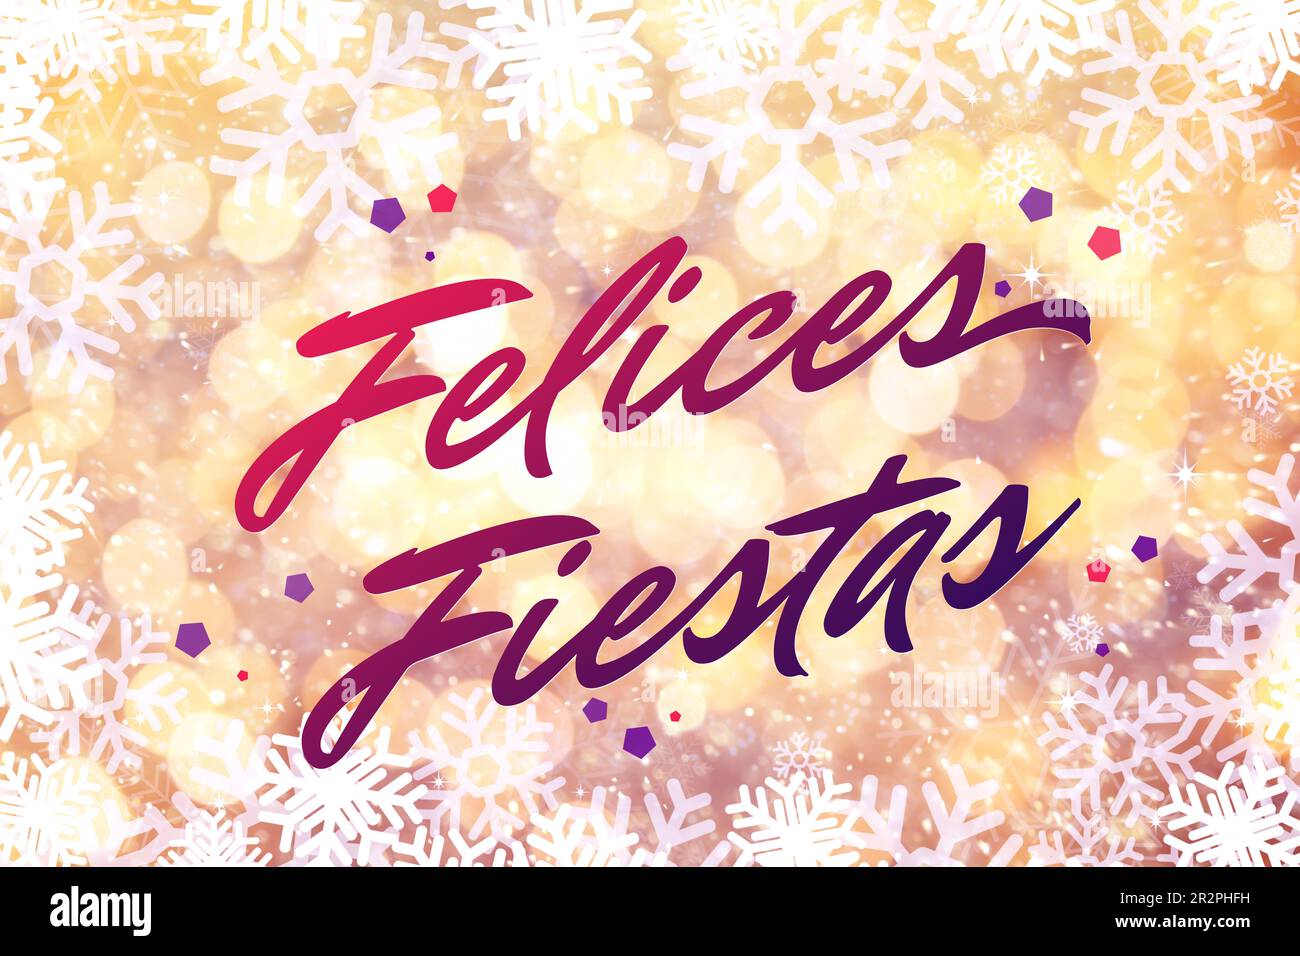 Felices Fiestas. Festliche Grußkarte mit frohen Feiertagswünschen auf Spanisch auf hellem Hintergrund Stockfoto